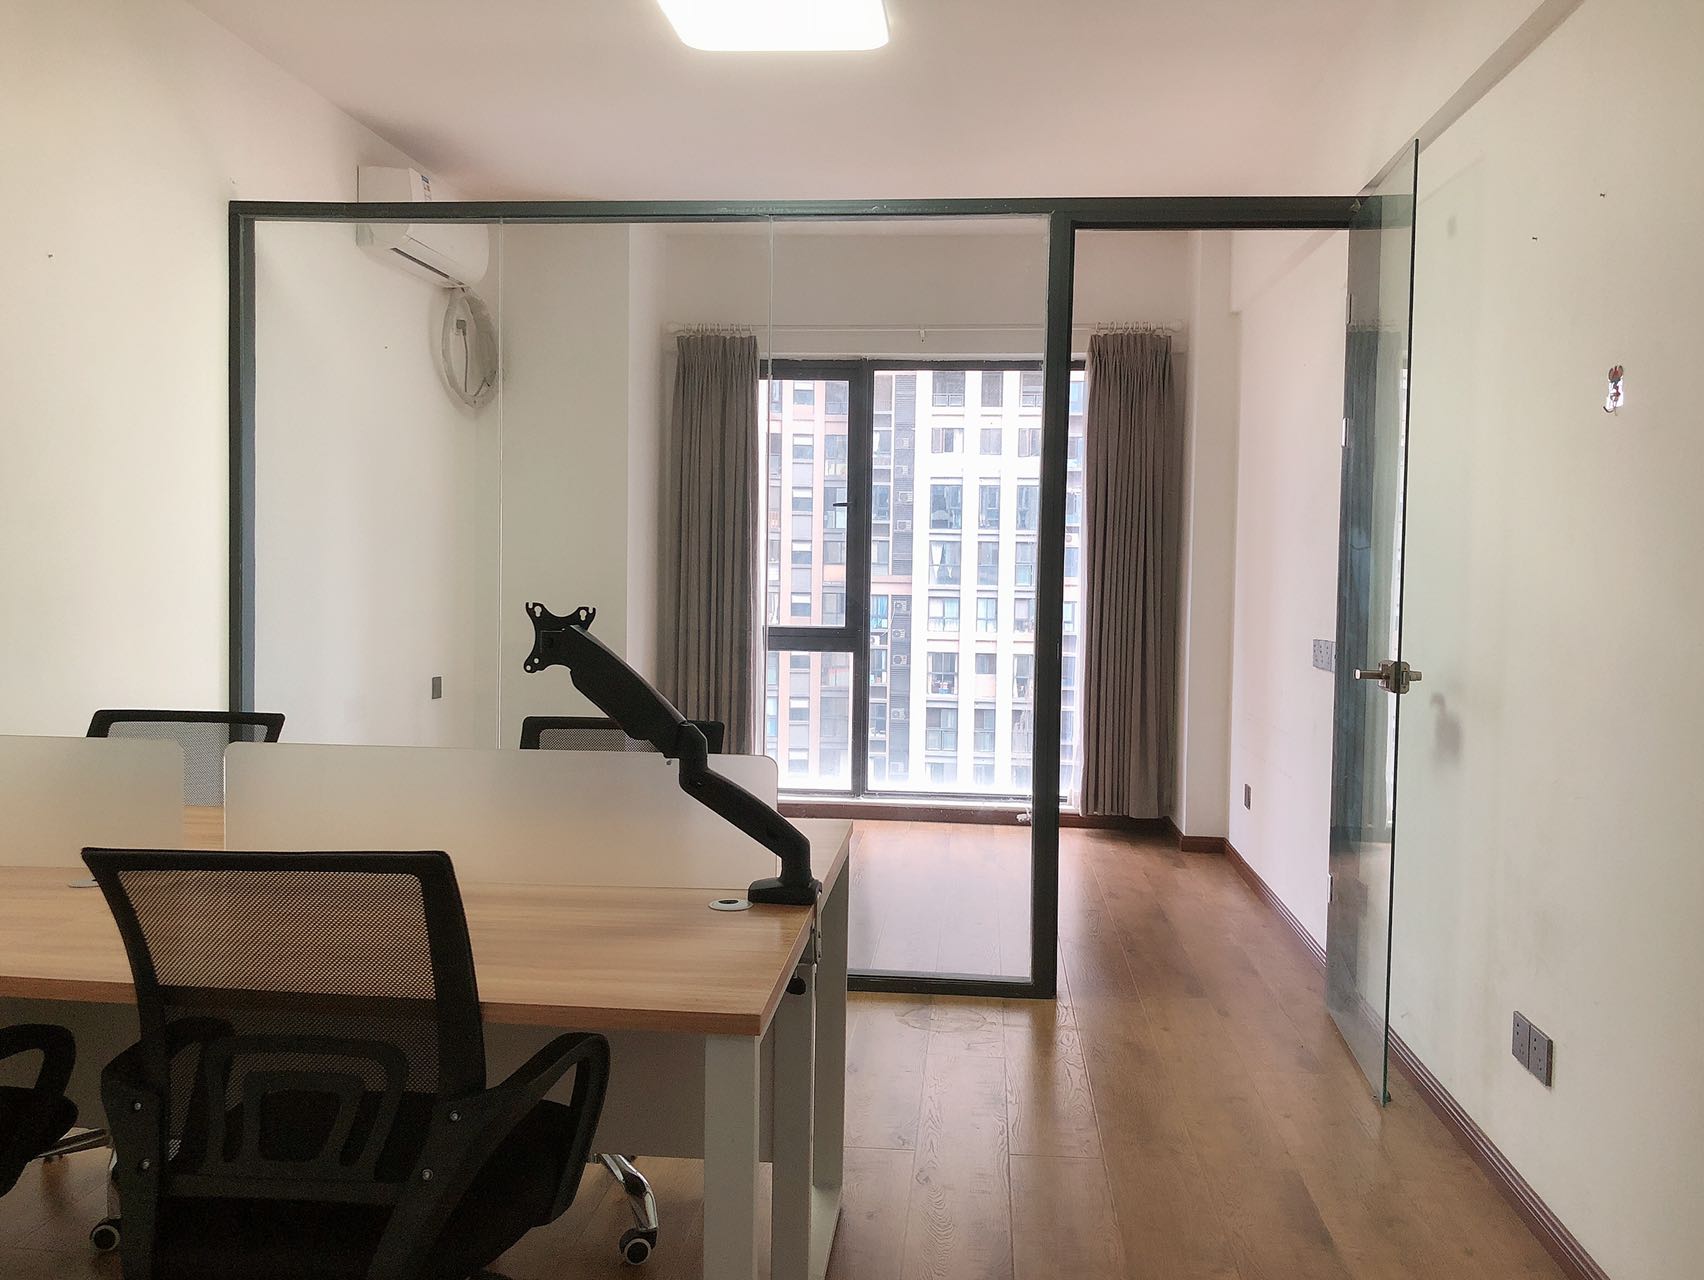 天府新區藍潤置地廣場精裝42平小面積辦公室特價出租 物業費低